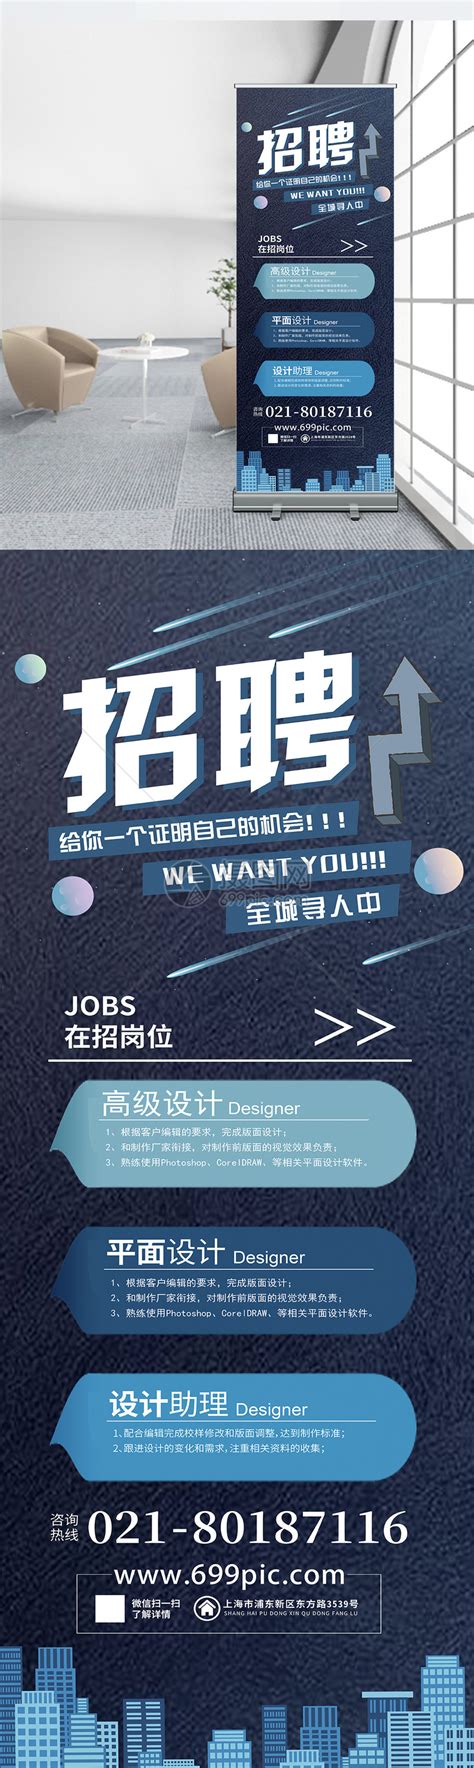 设计公司招聘招聘系列海报设计模板下载 (编号：12879)_喷绘海报_其他_图旺旺在线制图软件www.tuwangwang.com